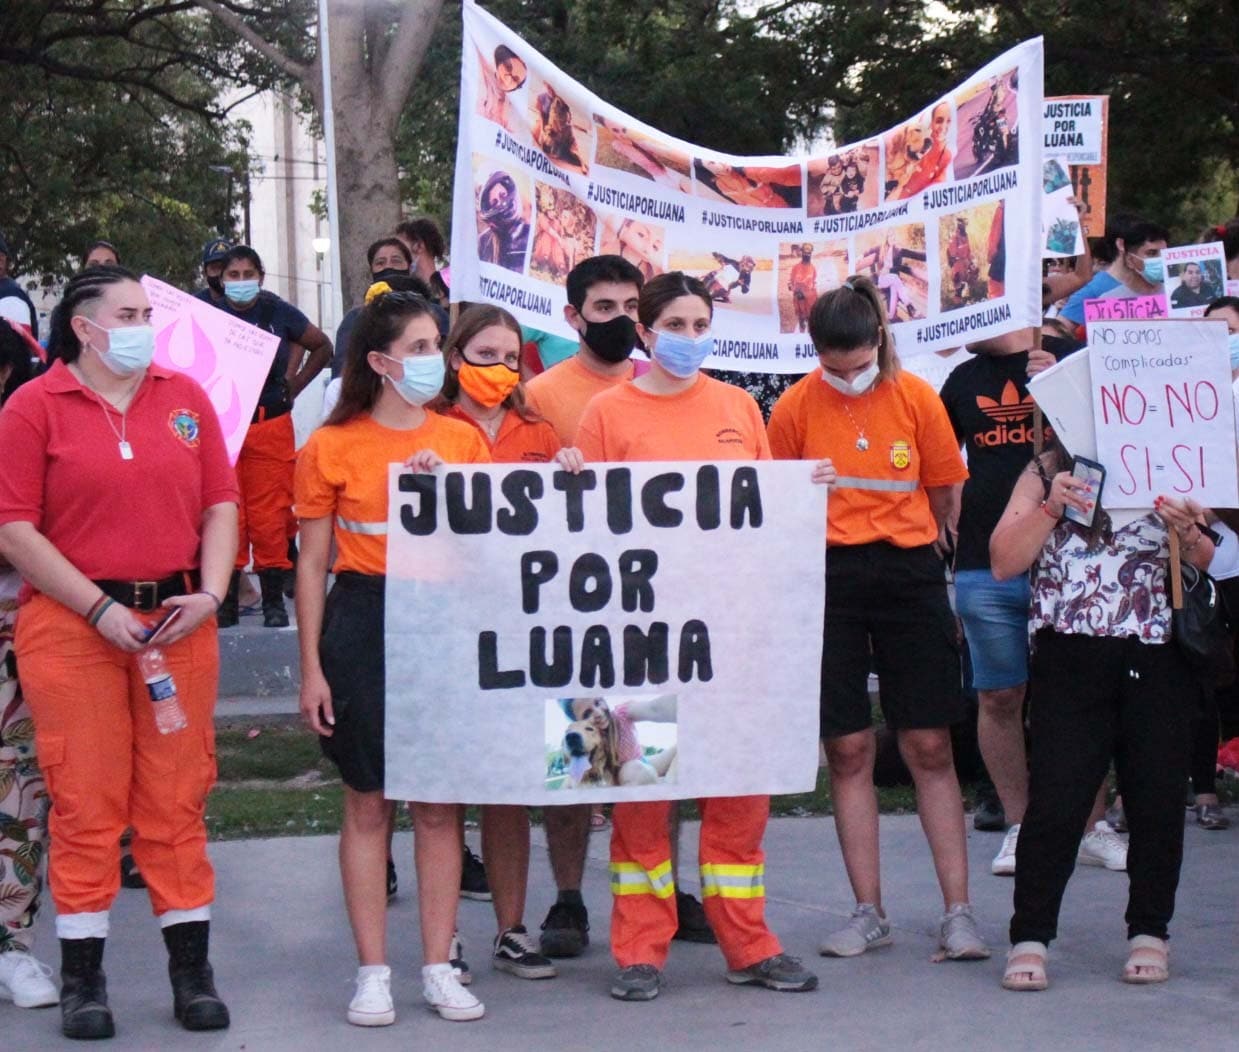 Córdoba: el reclamo de justicia tras el suicidio de Luana apunta a la violencia machista